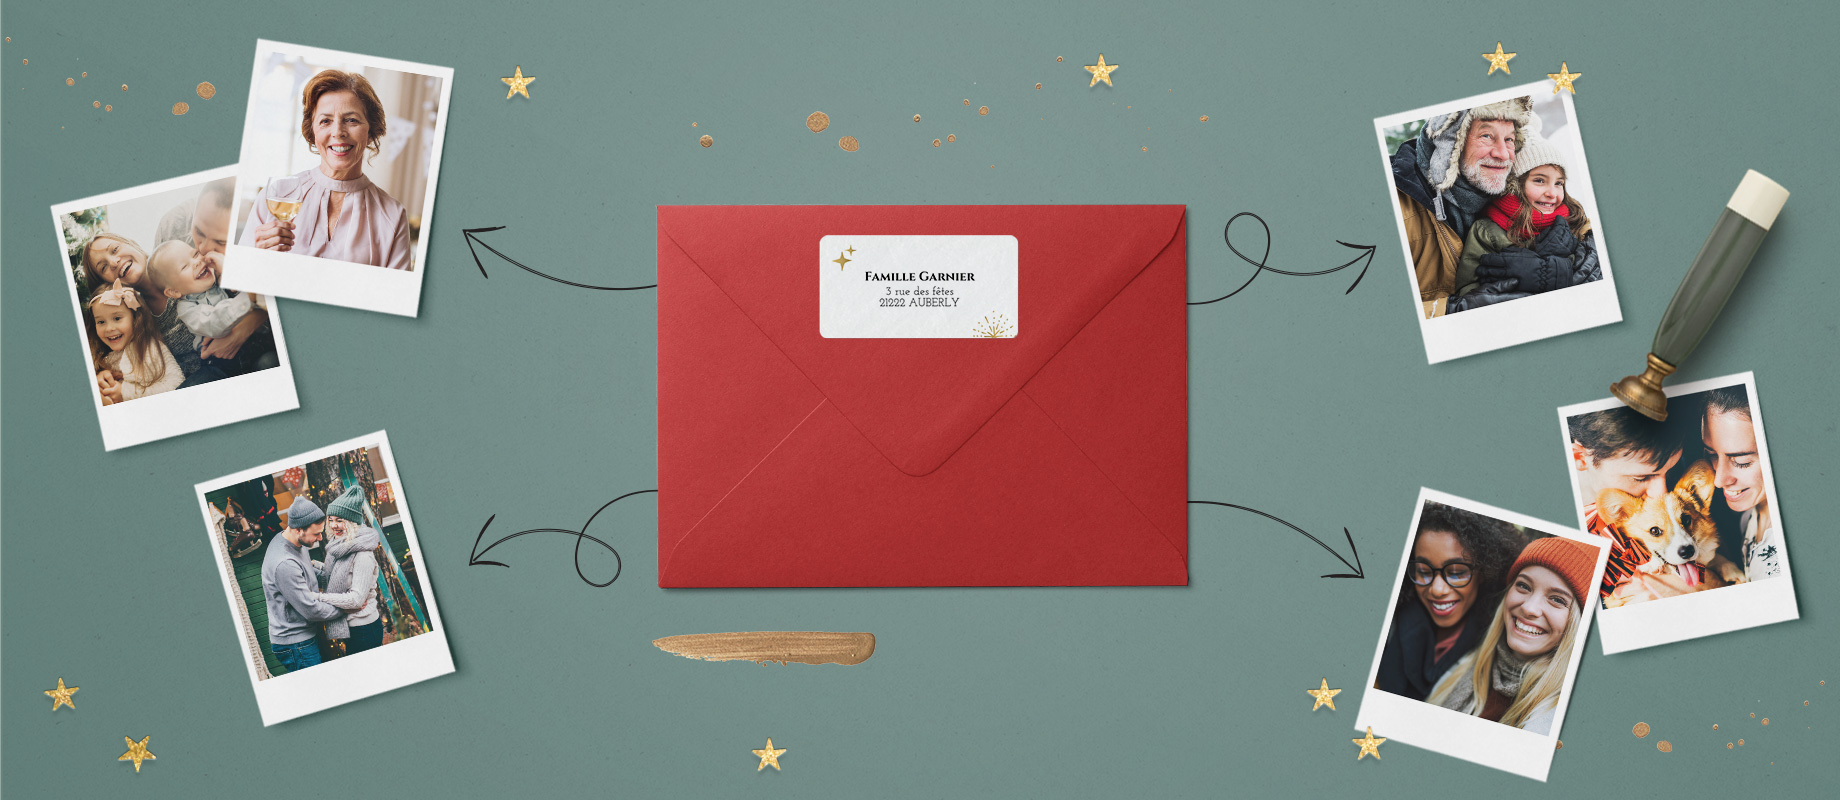 Une enveloppe rouge avec une étiquette d'adresse personnalisée, entourée de photos de familles.